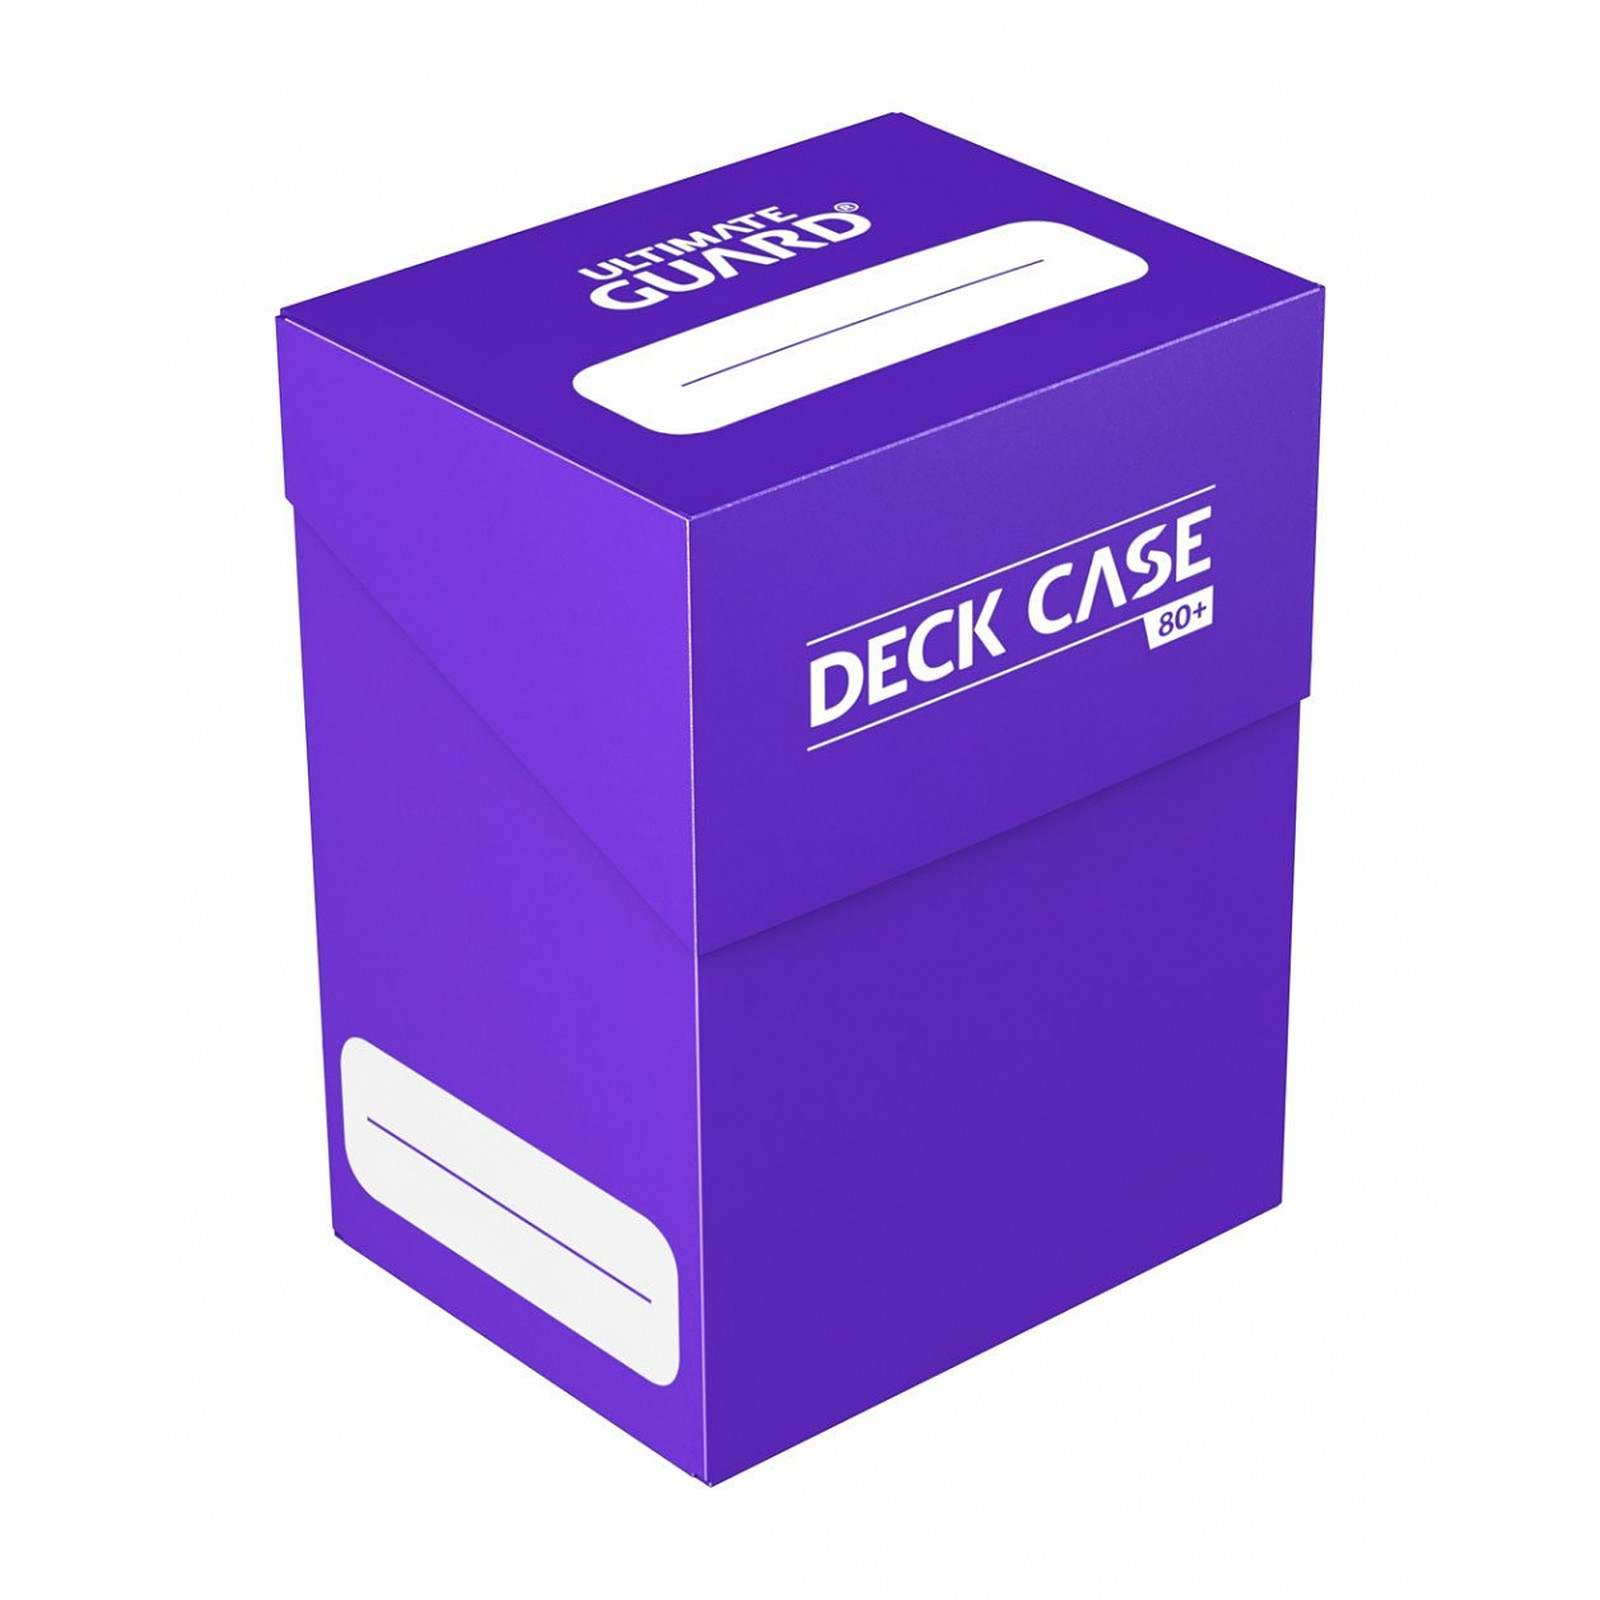 Ultimate Guard - Boite pour cartes Deck Case 80+ taille standard Violet - Accessoire jeux Ultimate Guard